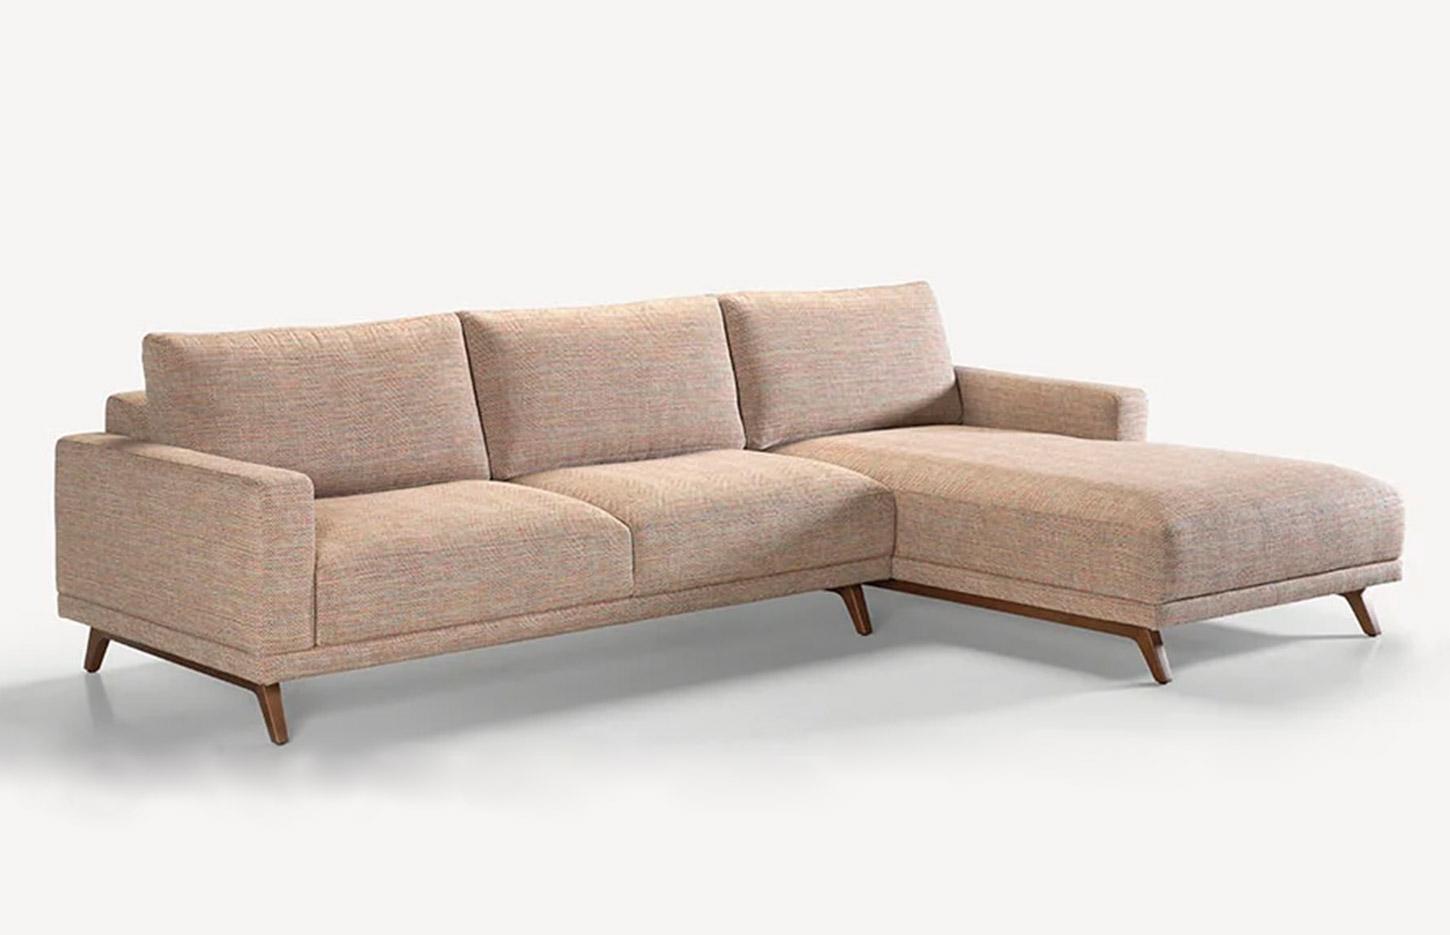 Canapé en tissu avec accoudoirs et pieds en bois, gamme Covelas - France Bureau